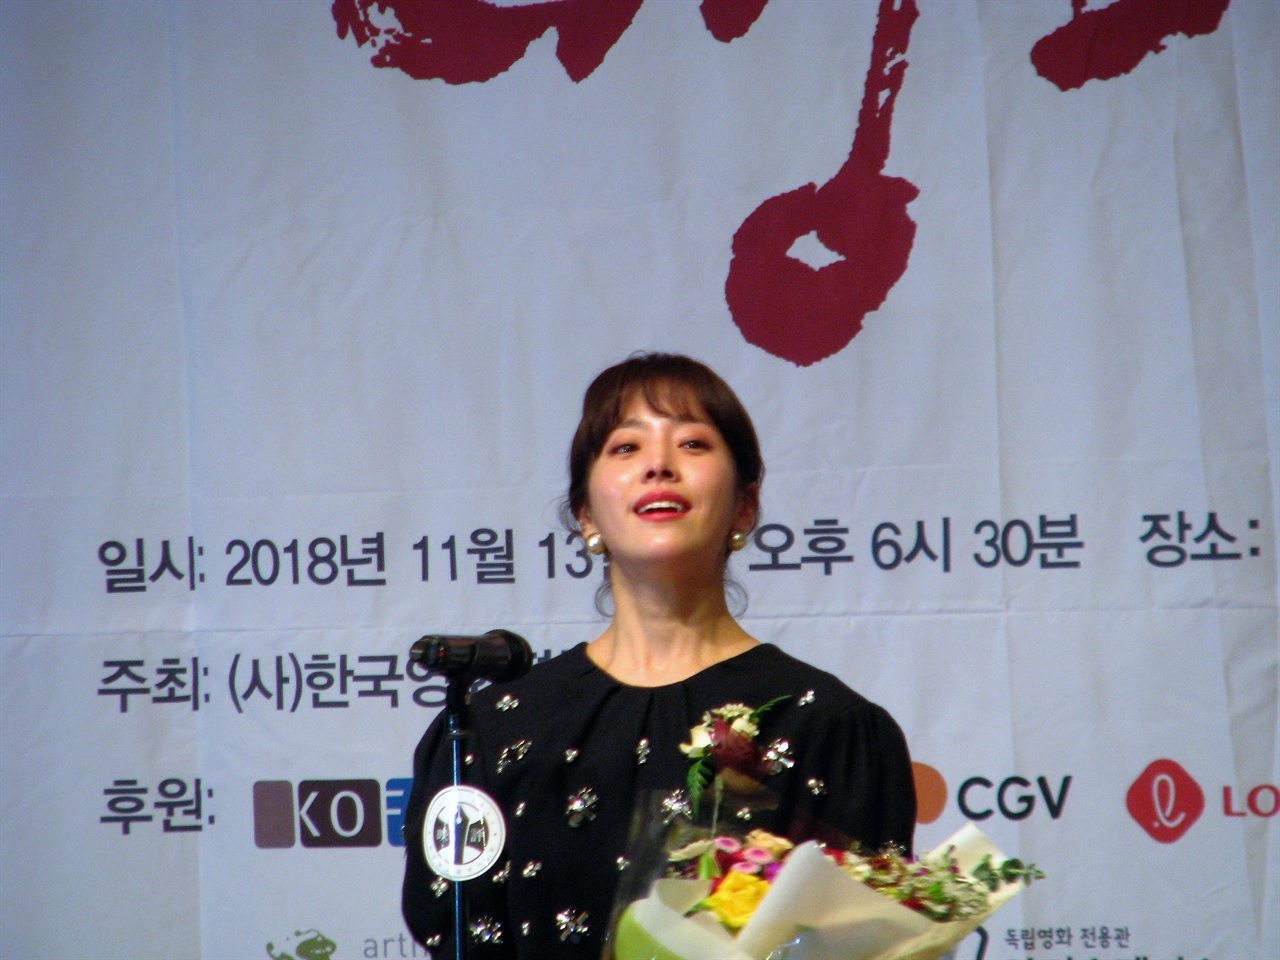  38회 영평상 여우주연상 수상자인 <미쓰백> 한지민 배우가 눈물을 참으며 수상소감을 말하고 있다. 